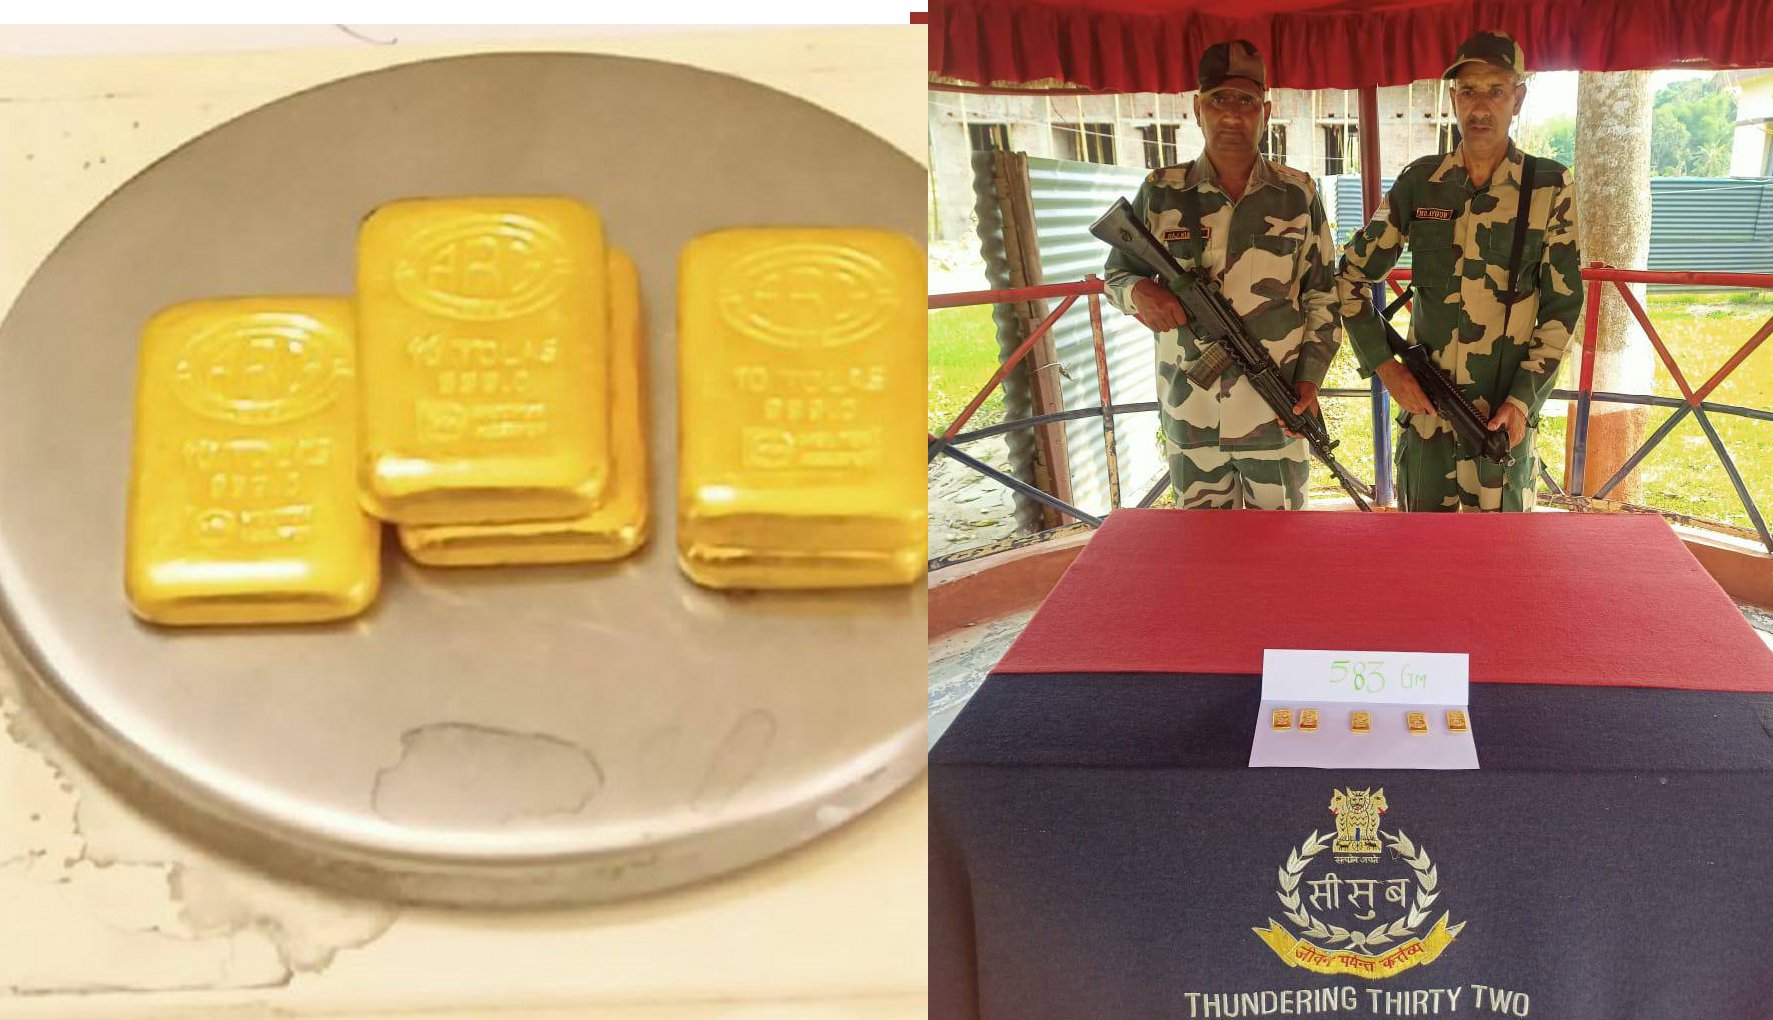 अंतरराष्ट्रीय सीमा पर 42 लाख रुपया का सोने का बिस्कुट बरामद, बीएसएफ चला रही है
तलाशी अभियान - image